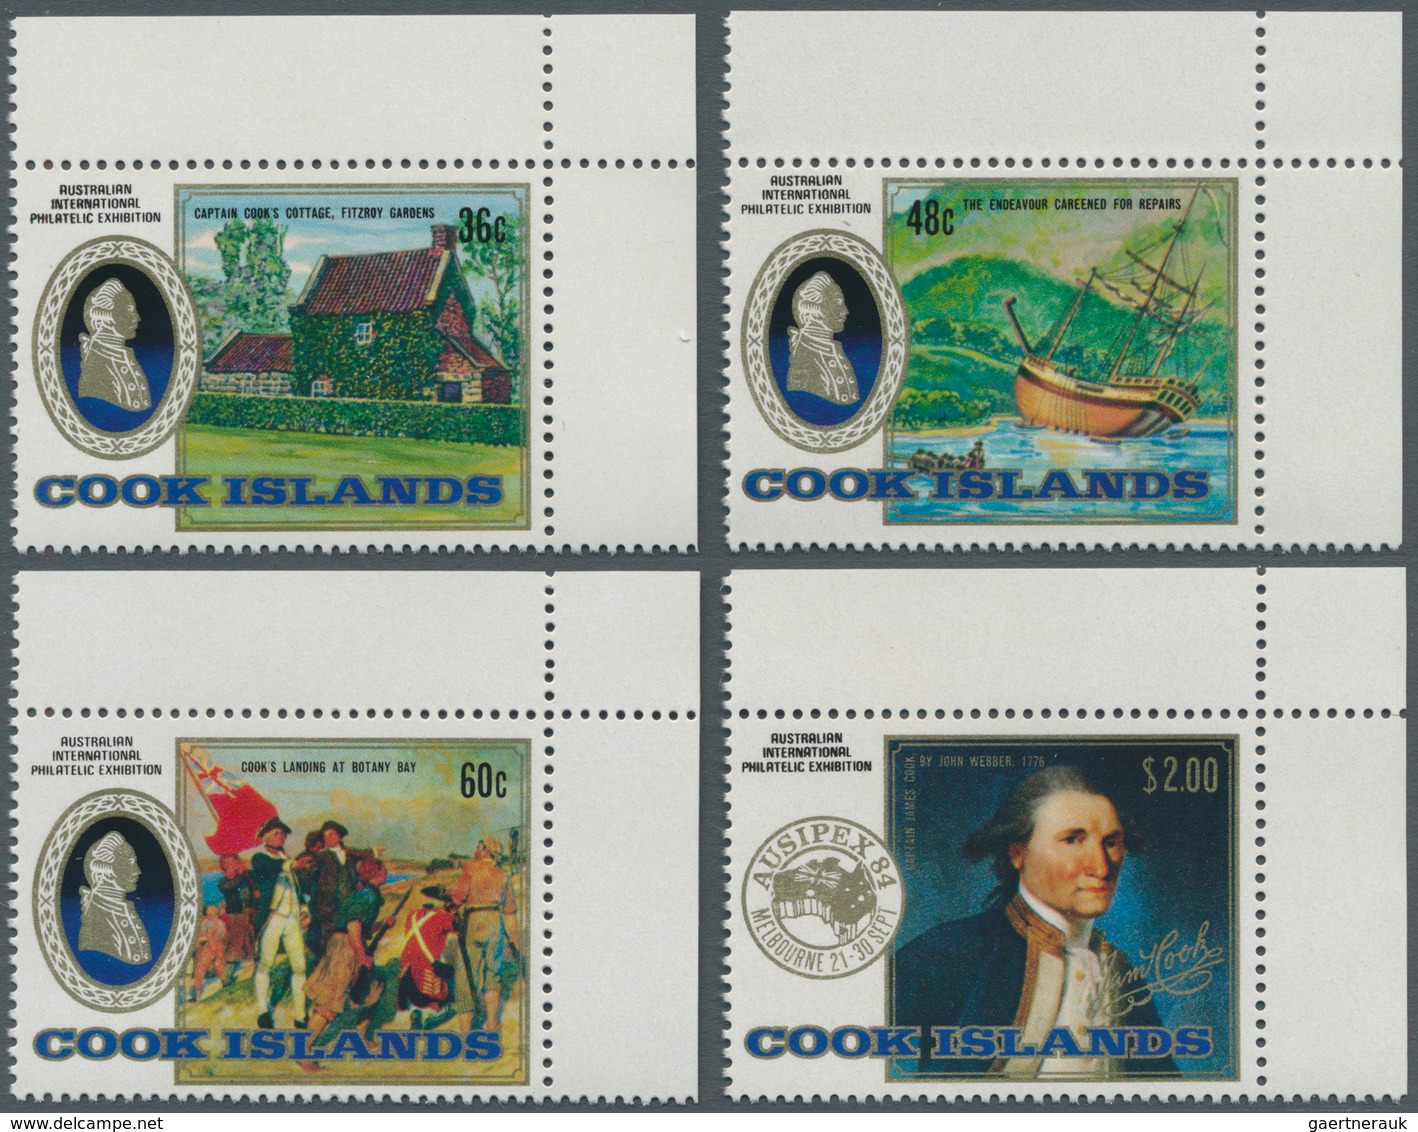 Thematik: Seefahrer, Entdecker / Sailors, Discoverers: 1984, COOK ISLANDS: Stamp Exhibition AUSIPEX - Erforscher